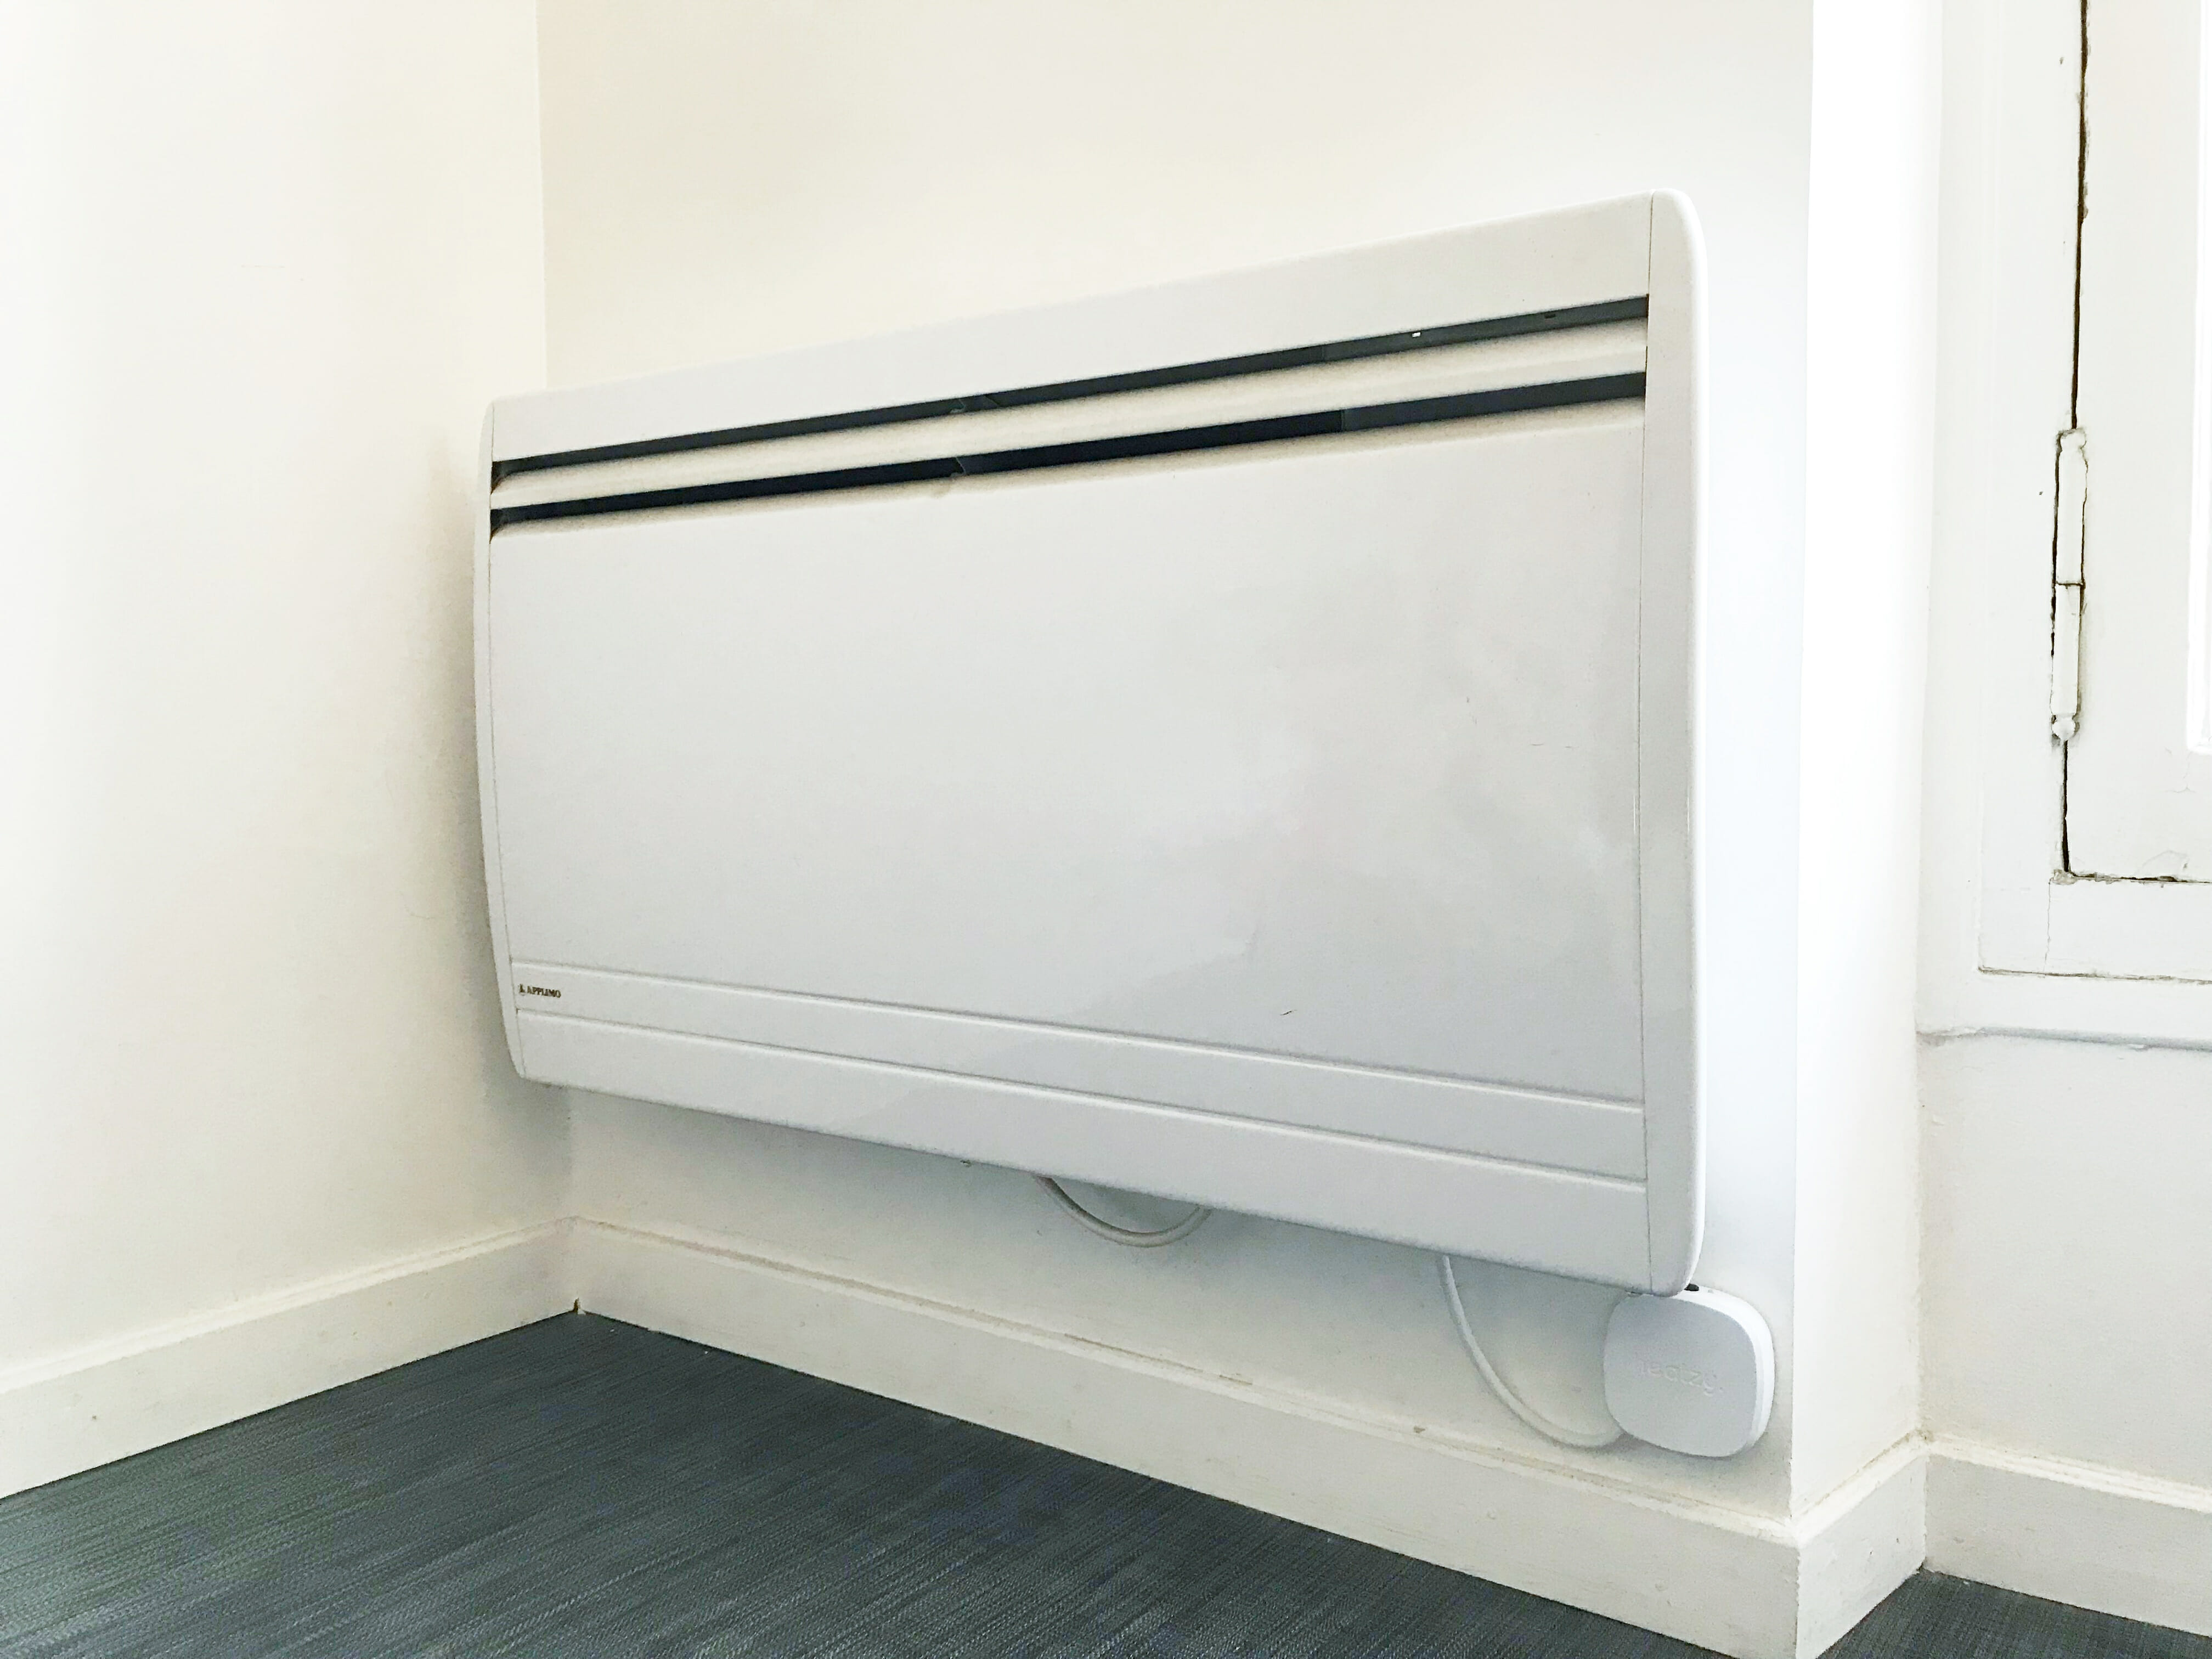 Heatzy, une innovation pour connecter vos radiateurs - Village